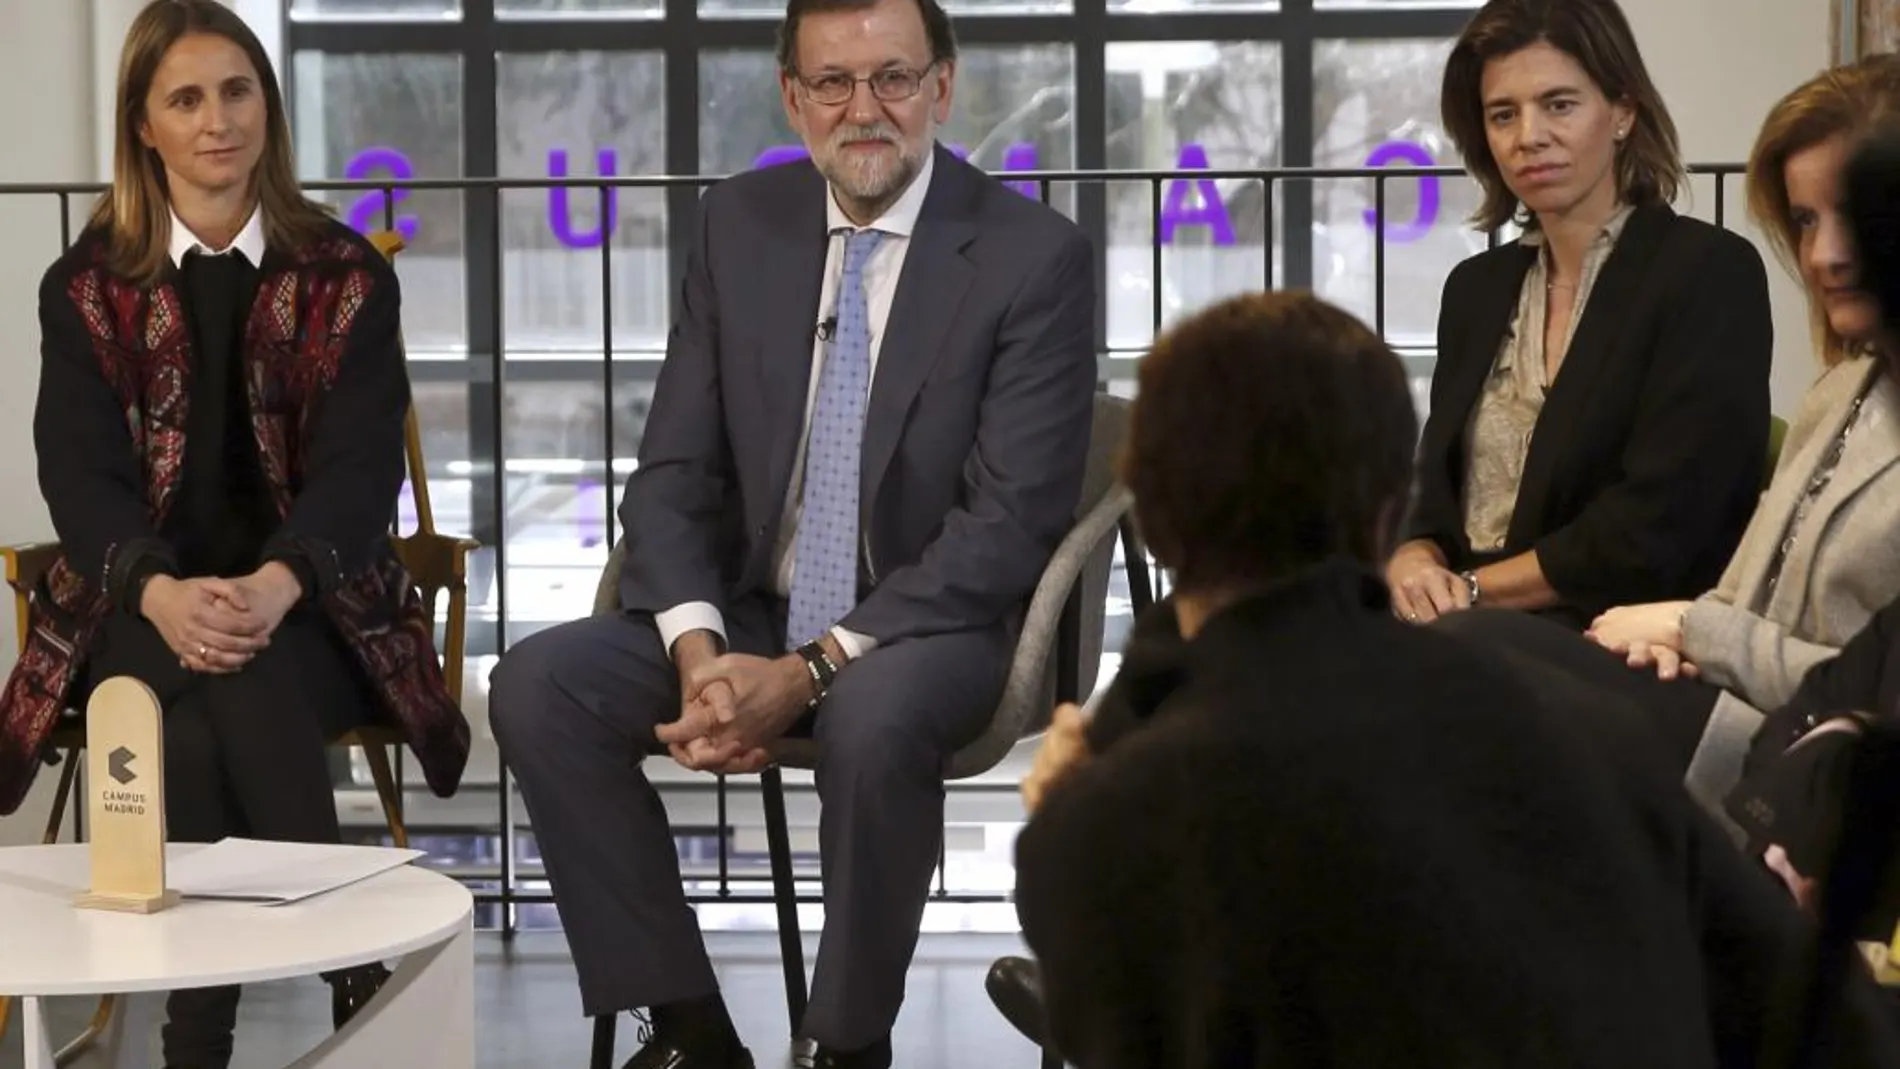 El jefe del Ejecutivo en funciones, Mariano Rajoy fondo,d), ha presidido hoy en el Campus Google un acto con mujeres emprendedoras, el día en que se celebra el Día Internacional de la Mujer.